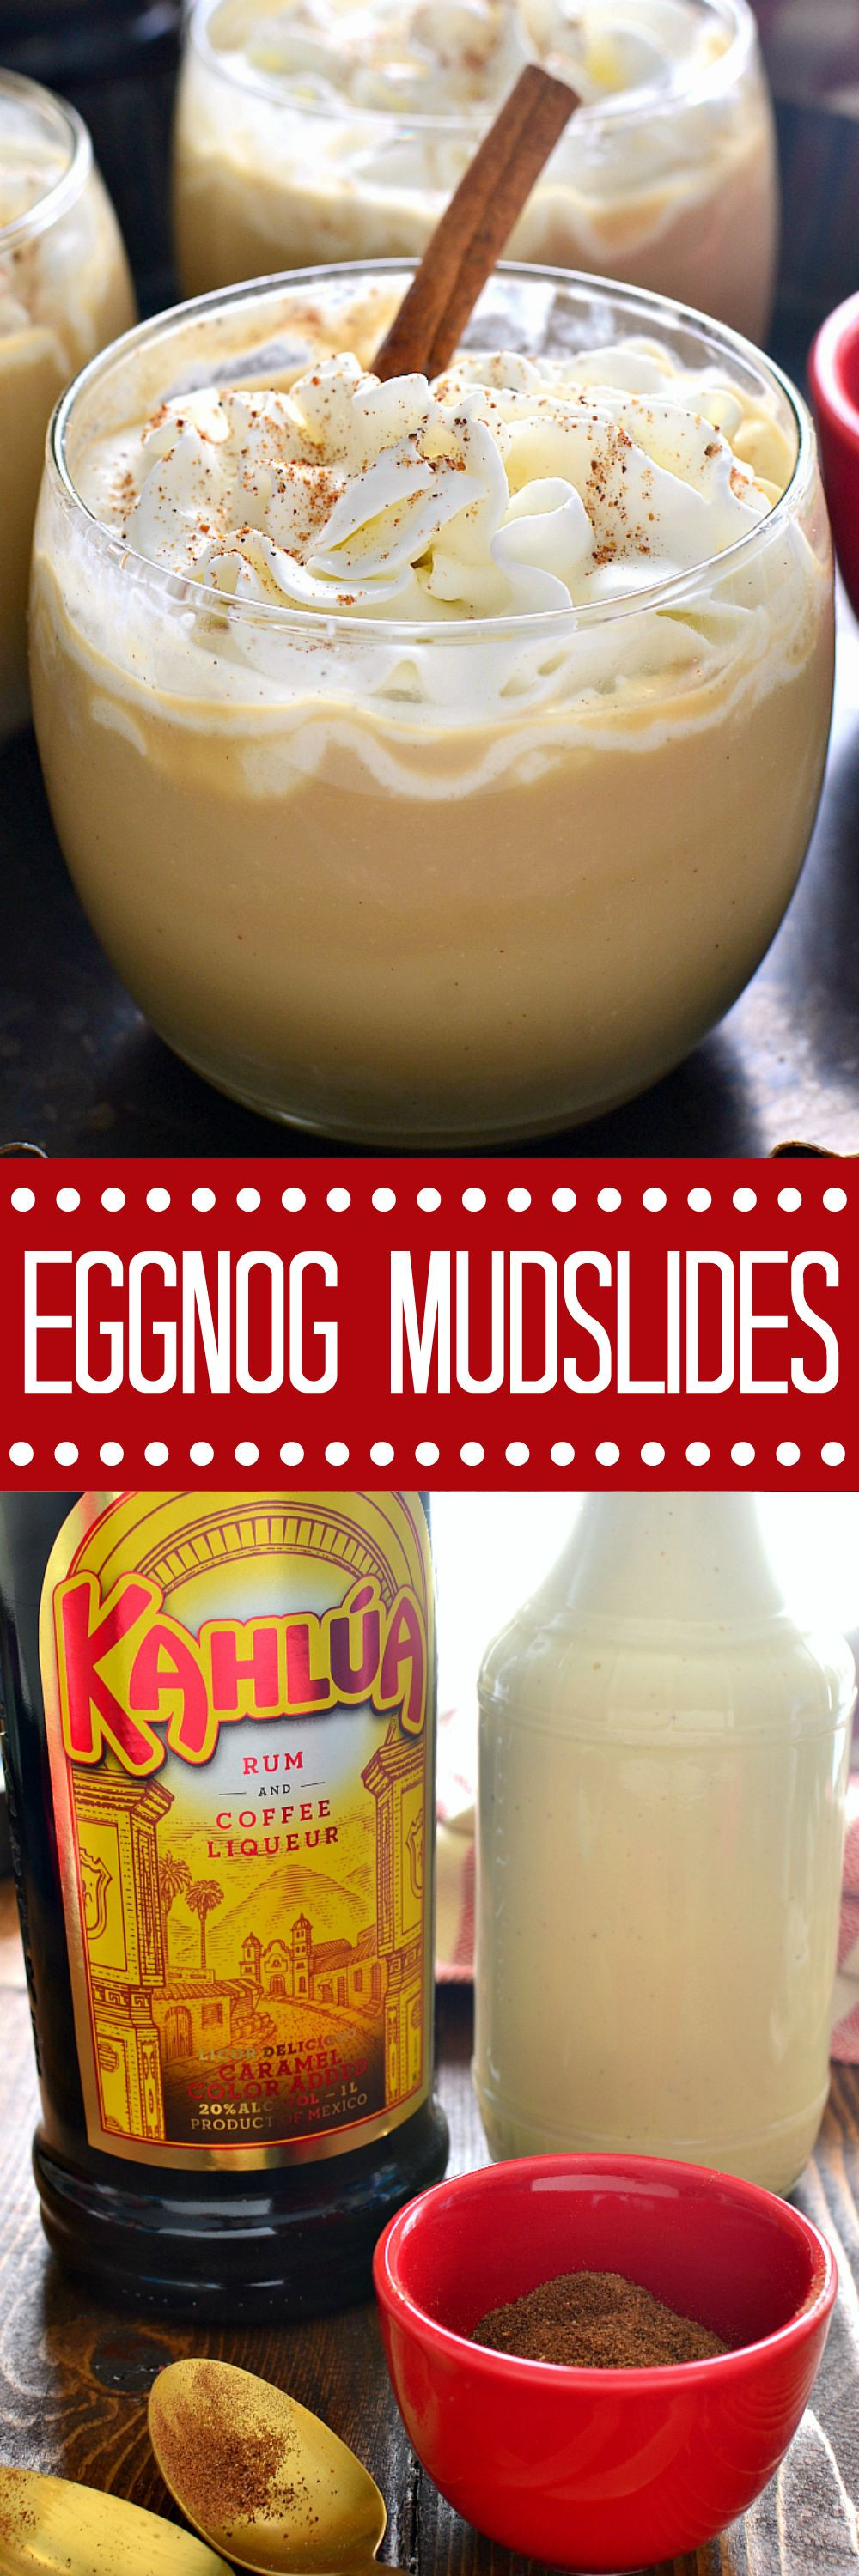 Christmas Eggnog Drink
 Eggnog Mudslide Recipe